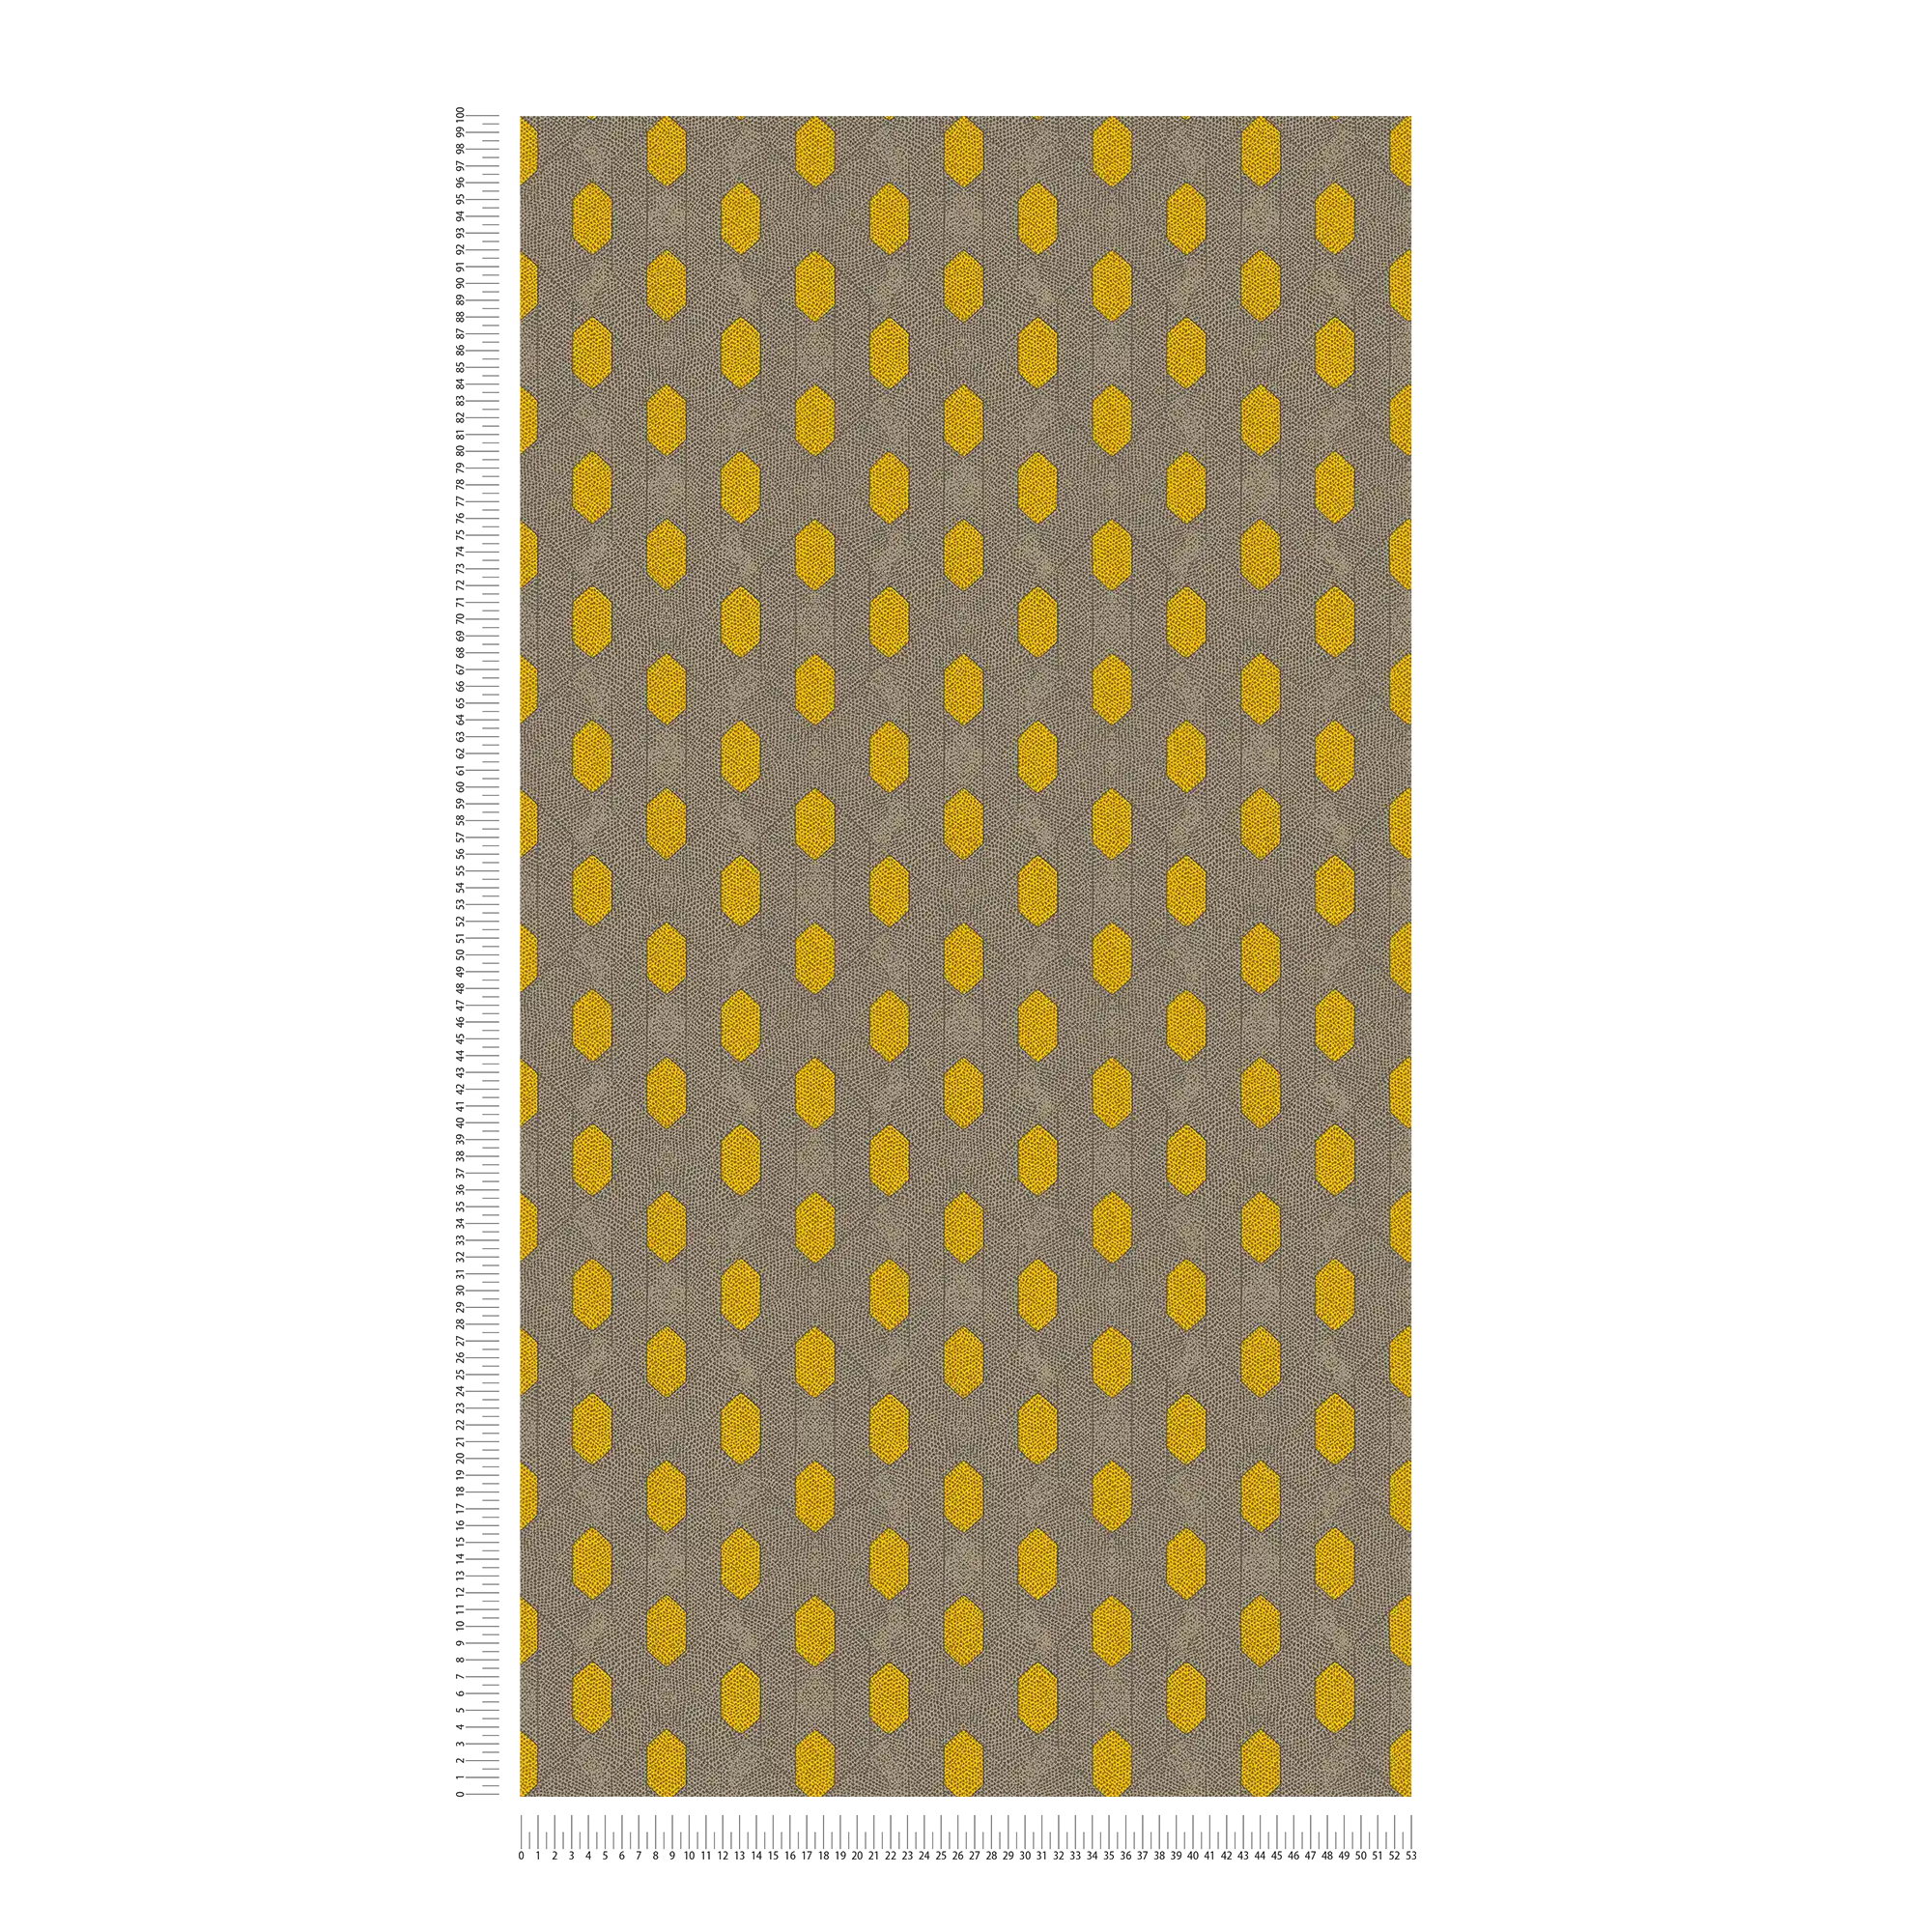             Carta da parati in tessuto non tessuto con motivo geometrico a punti - giallo, grigio, marrone
        